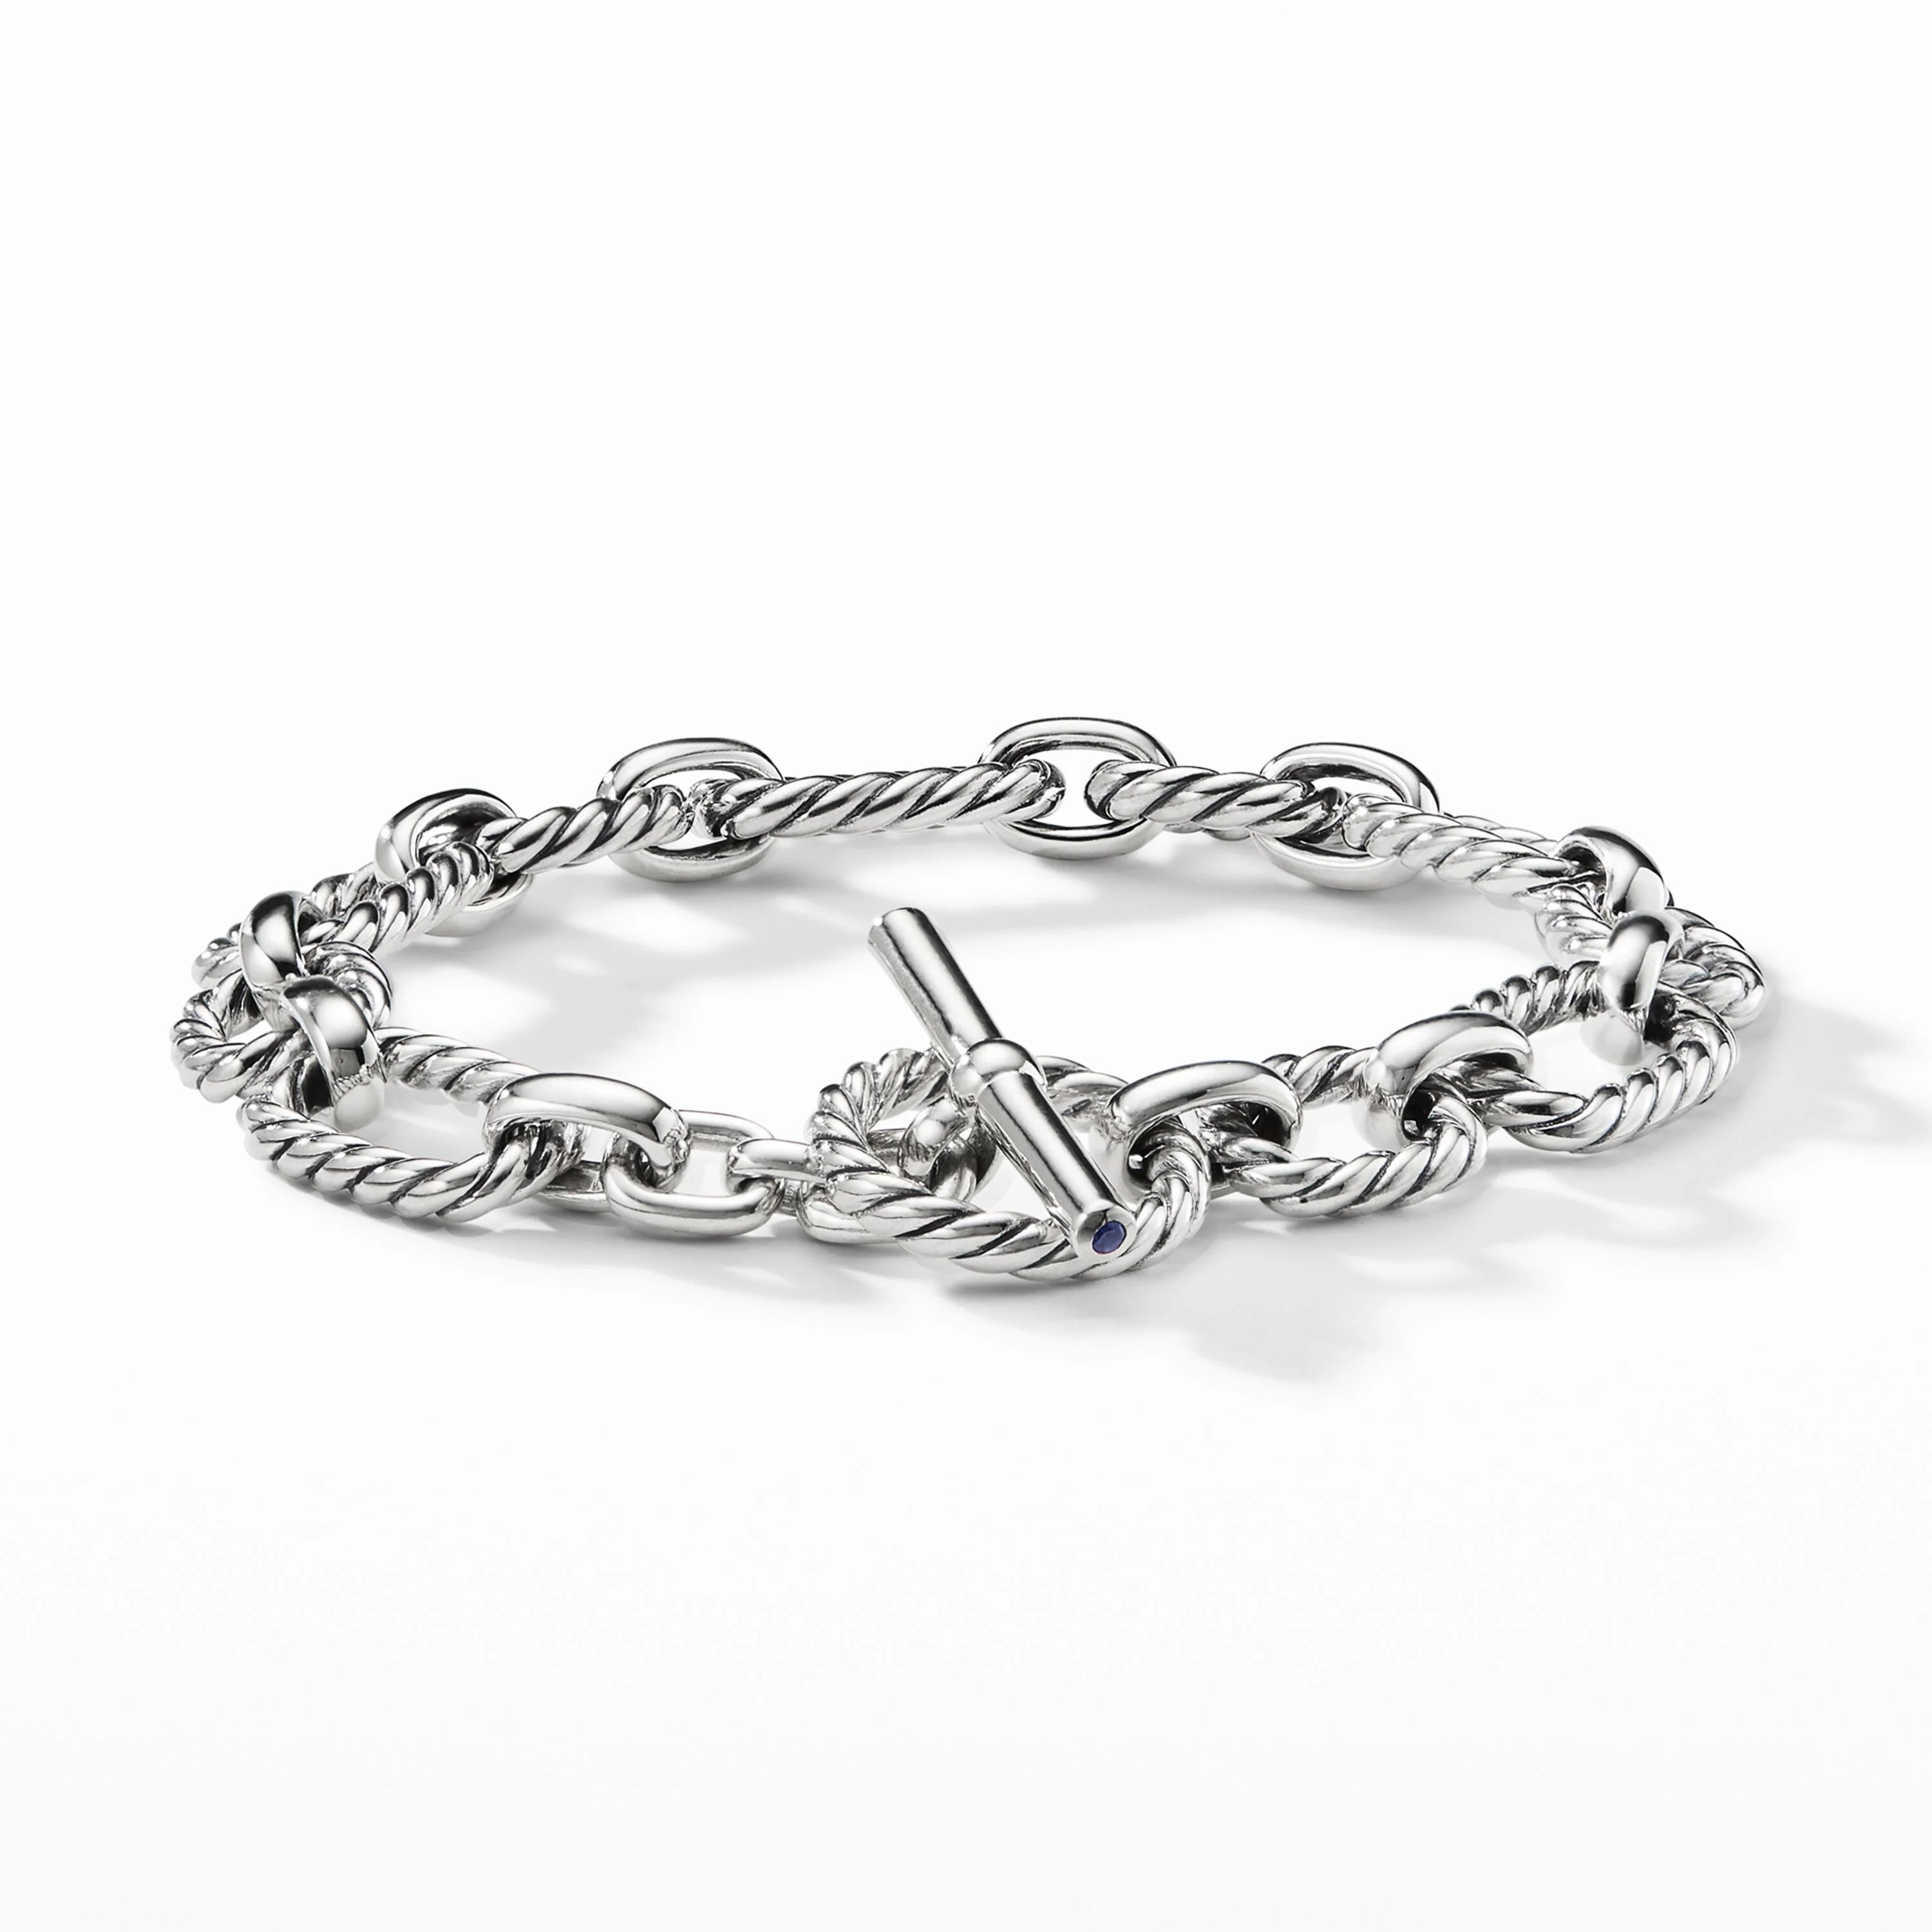 David Yurman | Cushion Link Chain Bracelet, 9.5mm | David Yurman